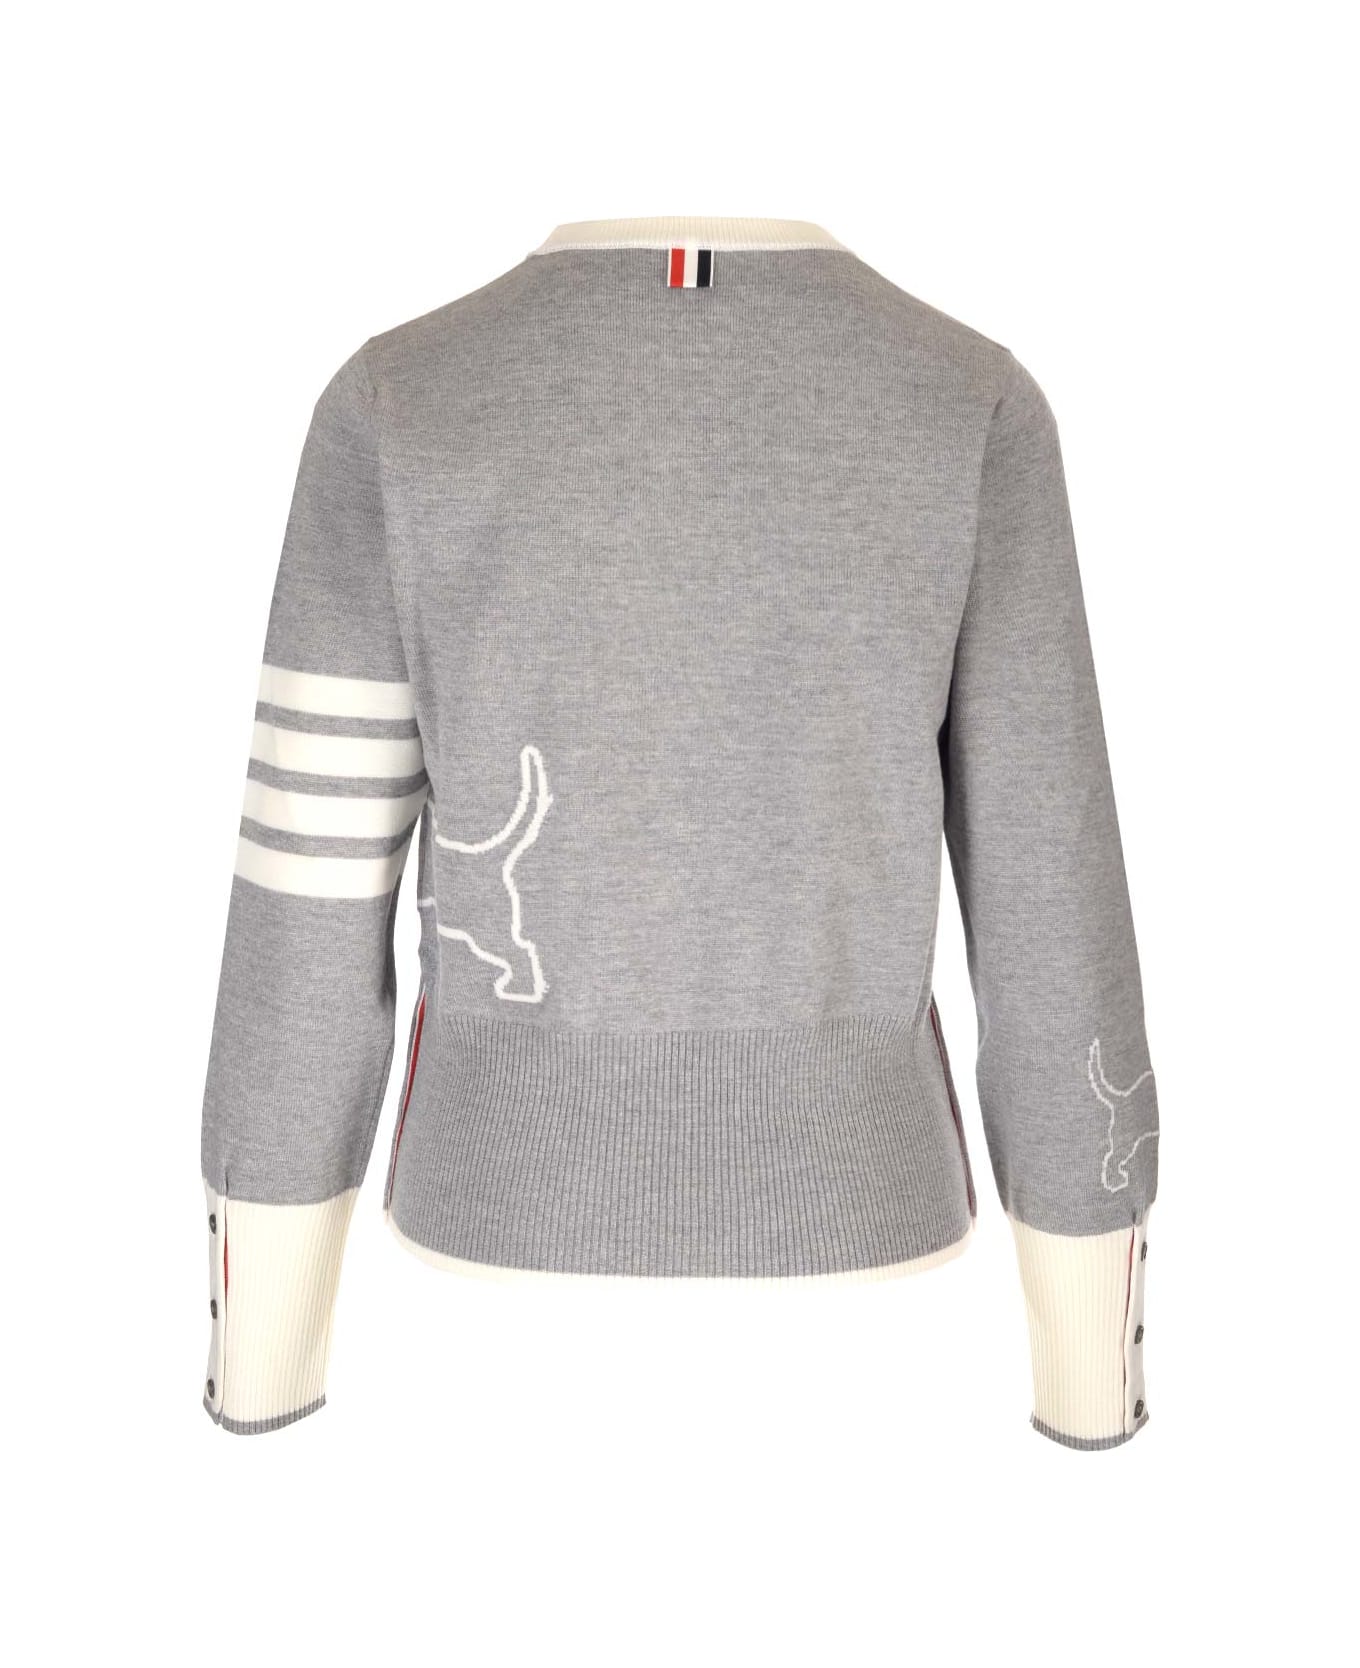 Thom Browne Merino Wool Crew-neck Sweater - Gray